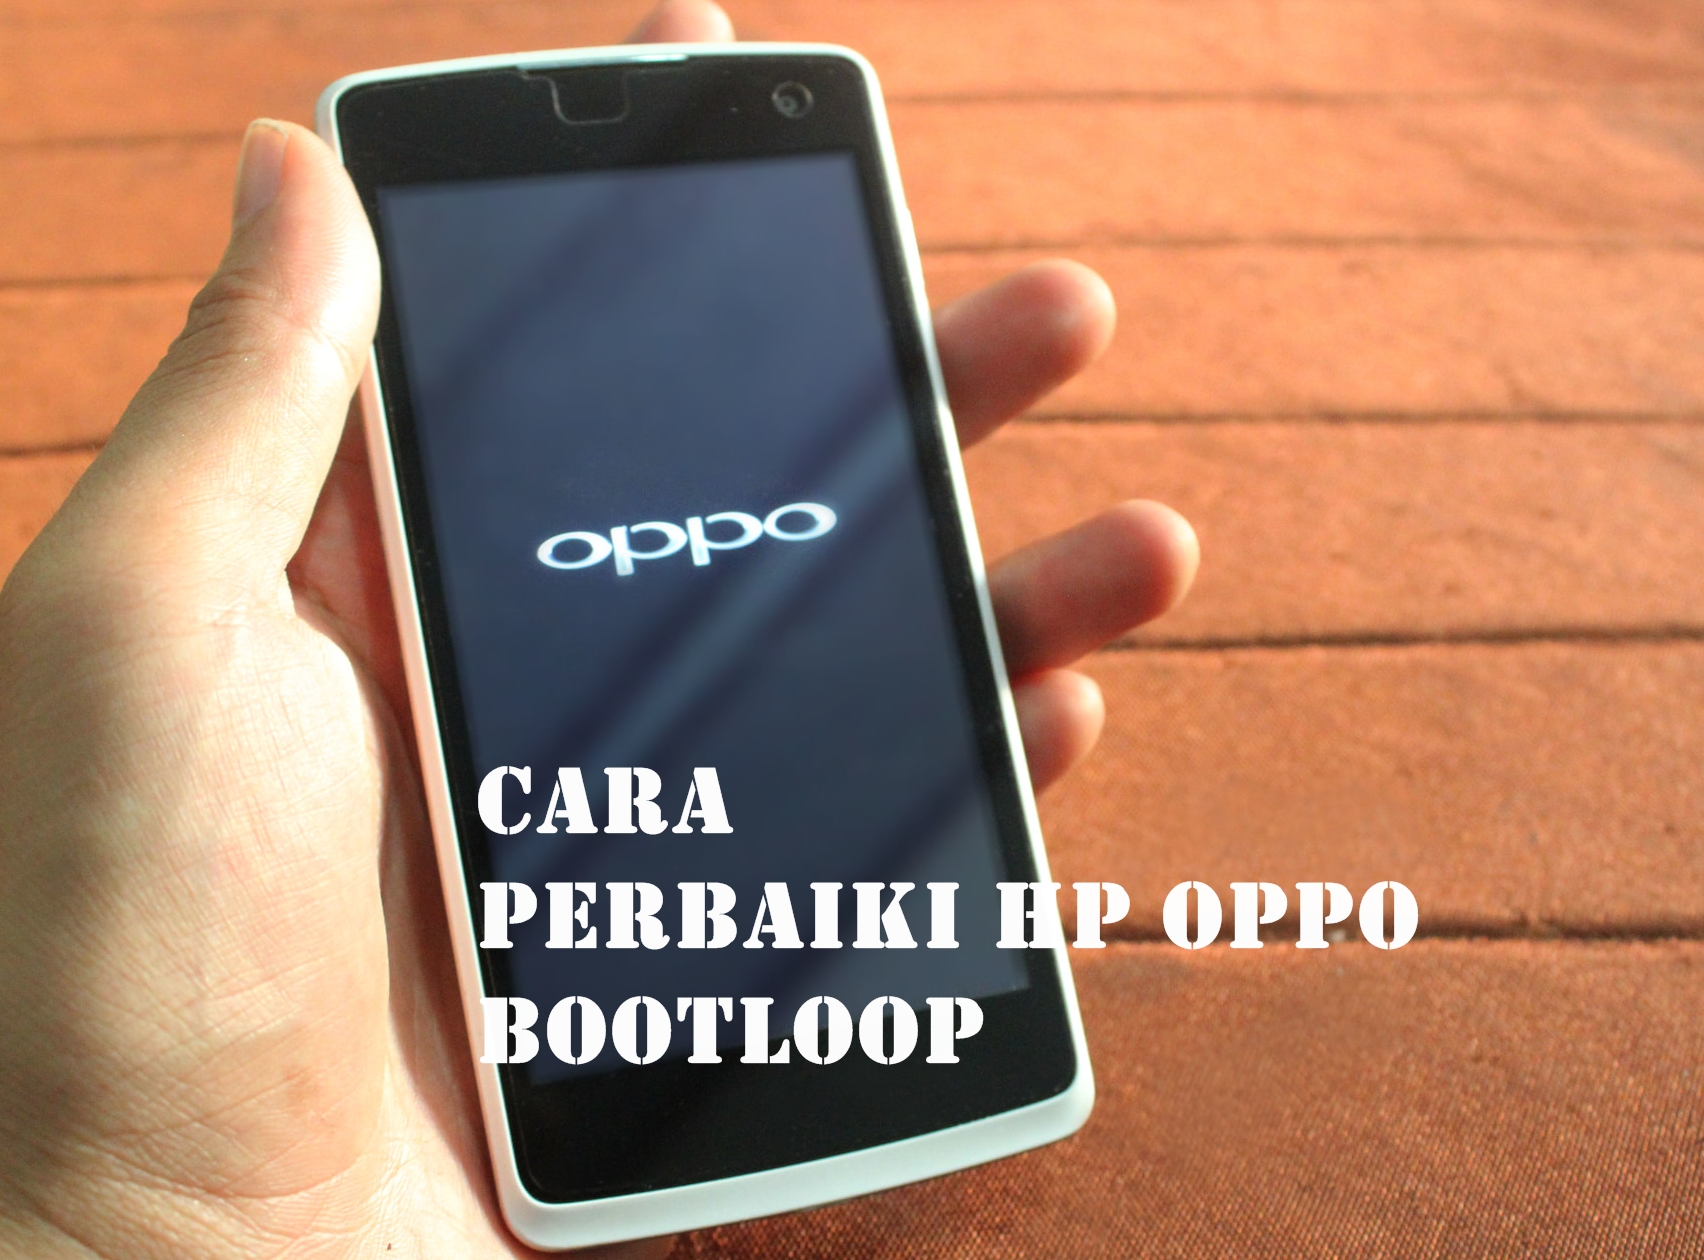 Cara perbaiki HP Oppo yang bootloop - detikgadget.com